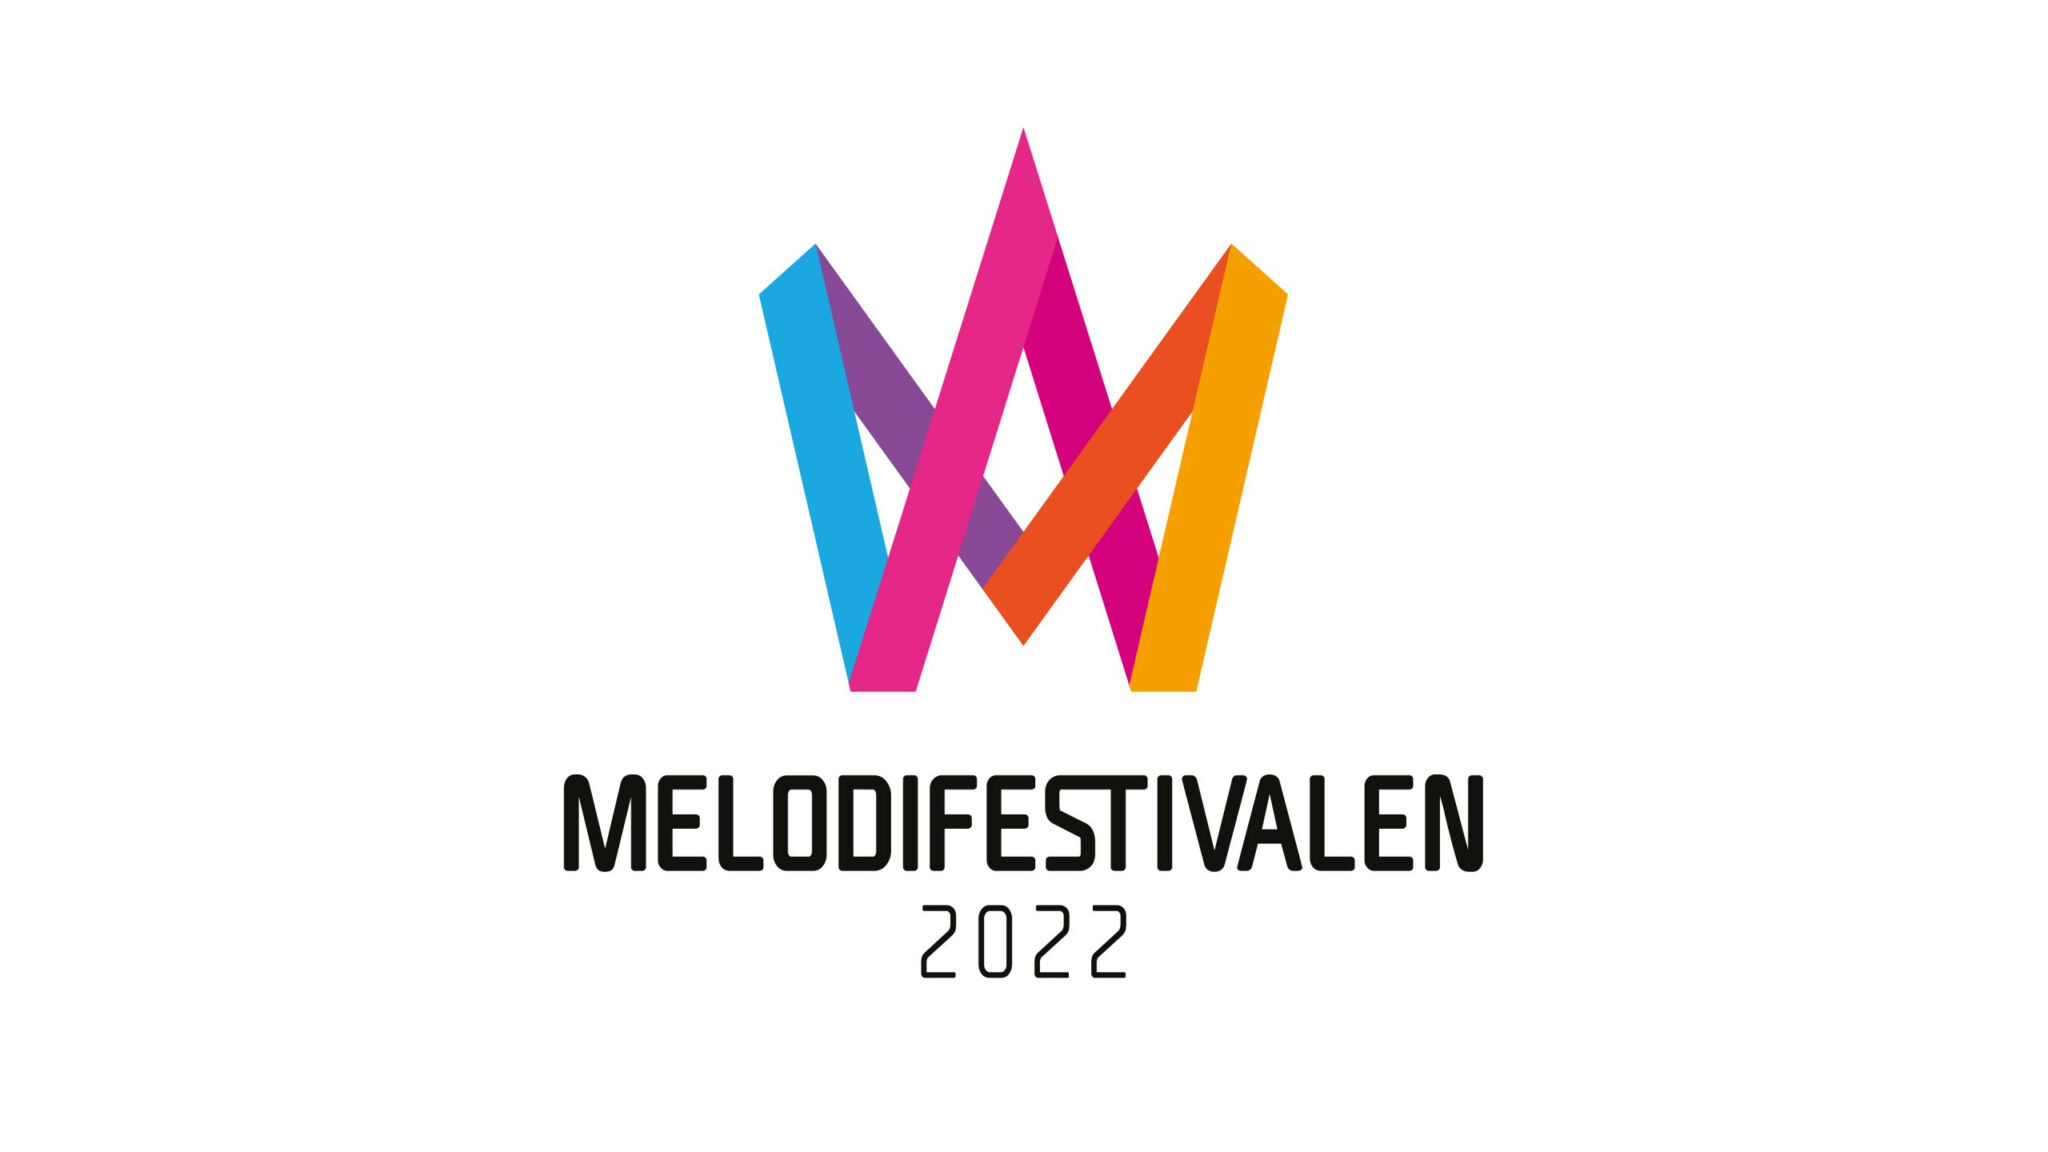 Musikförlagens bidrag i Melodifestivalen 2022